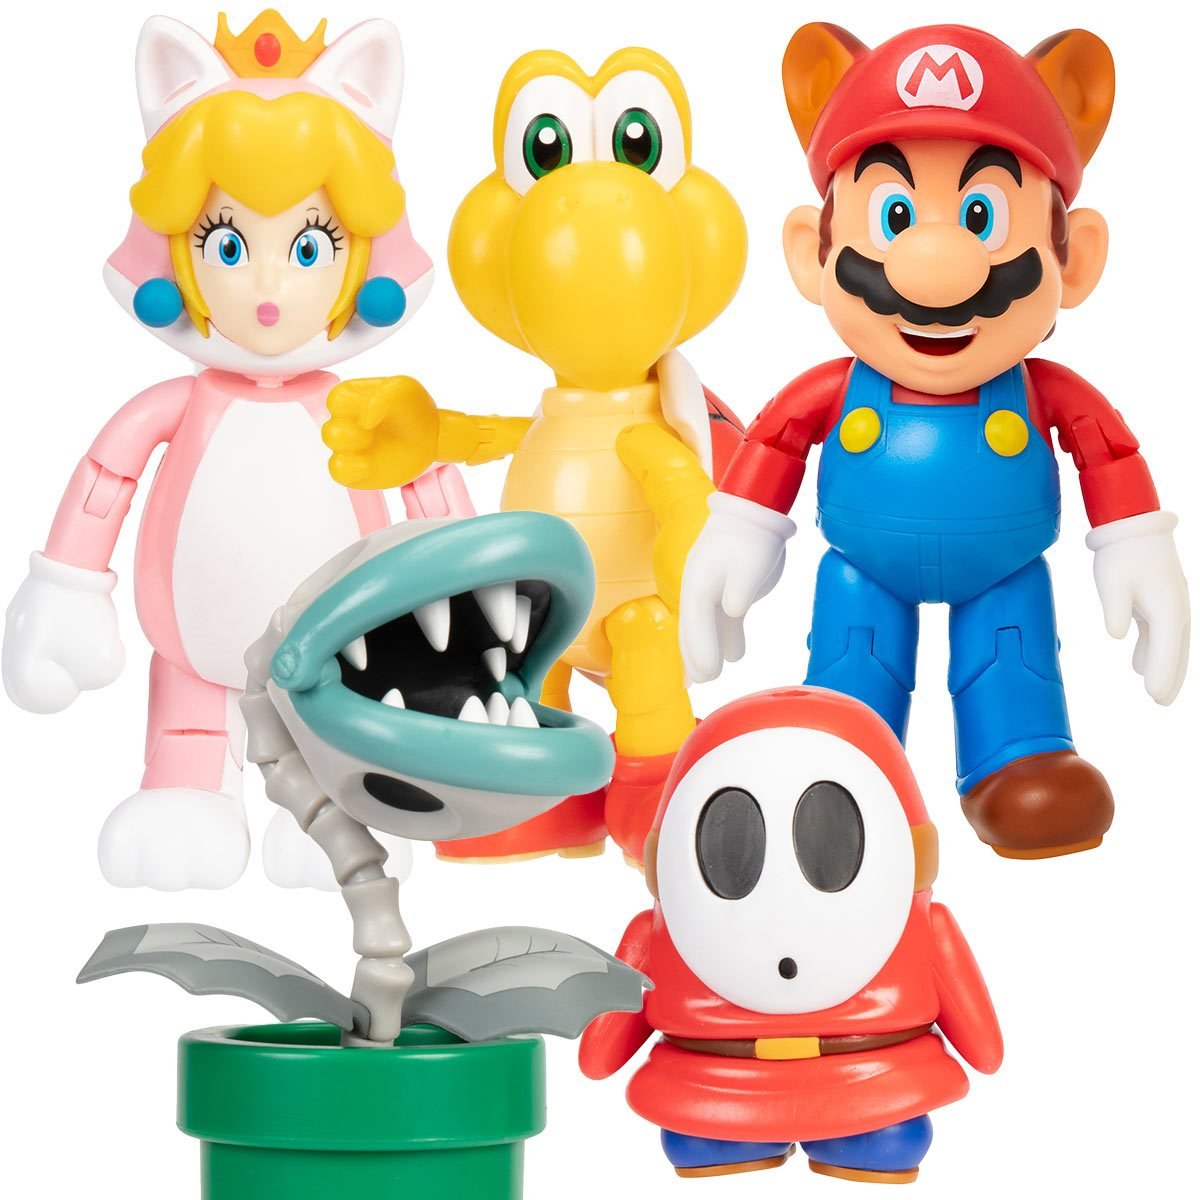 World of Nintendo 4 Figures Cat Mario w/ Bell 